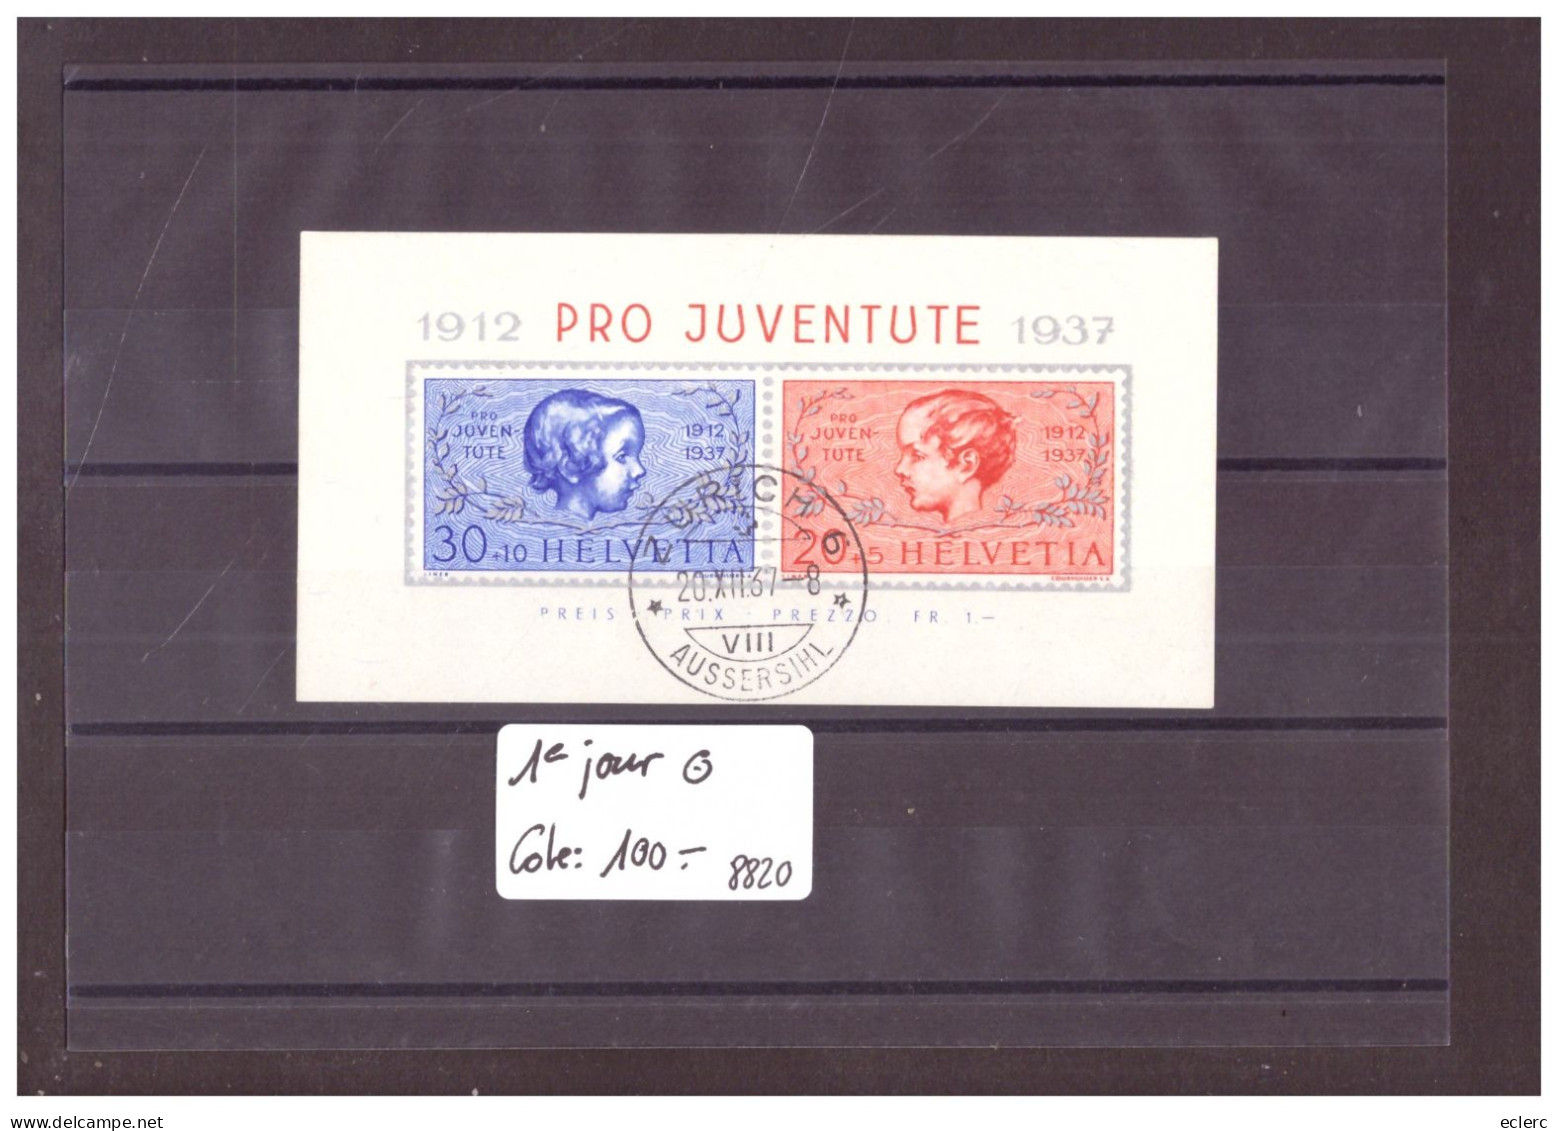 BLOC PRO JUVENTUTE 1937 OBLITERE PREMIER JOUR  - COTE: 100.- - Blocks & Kleinbögen